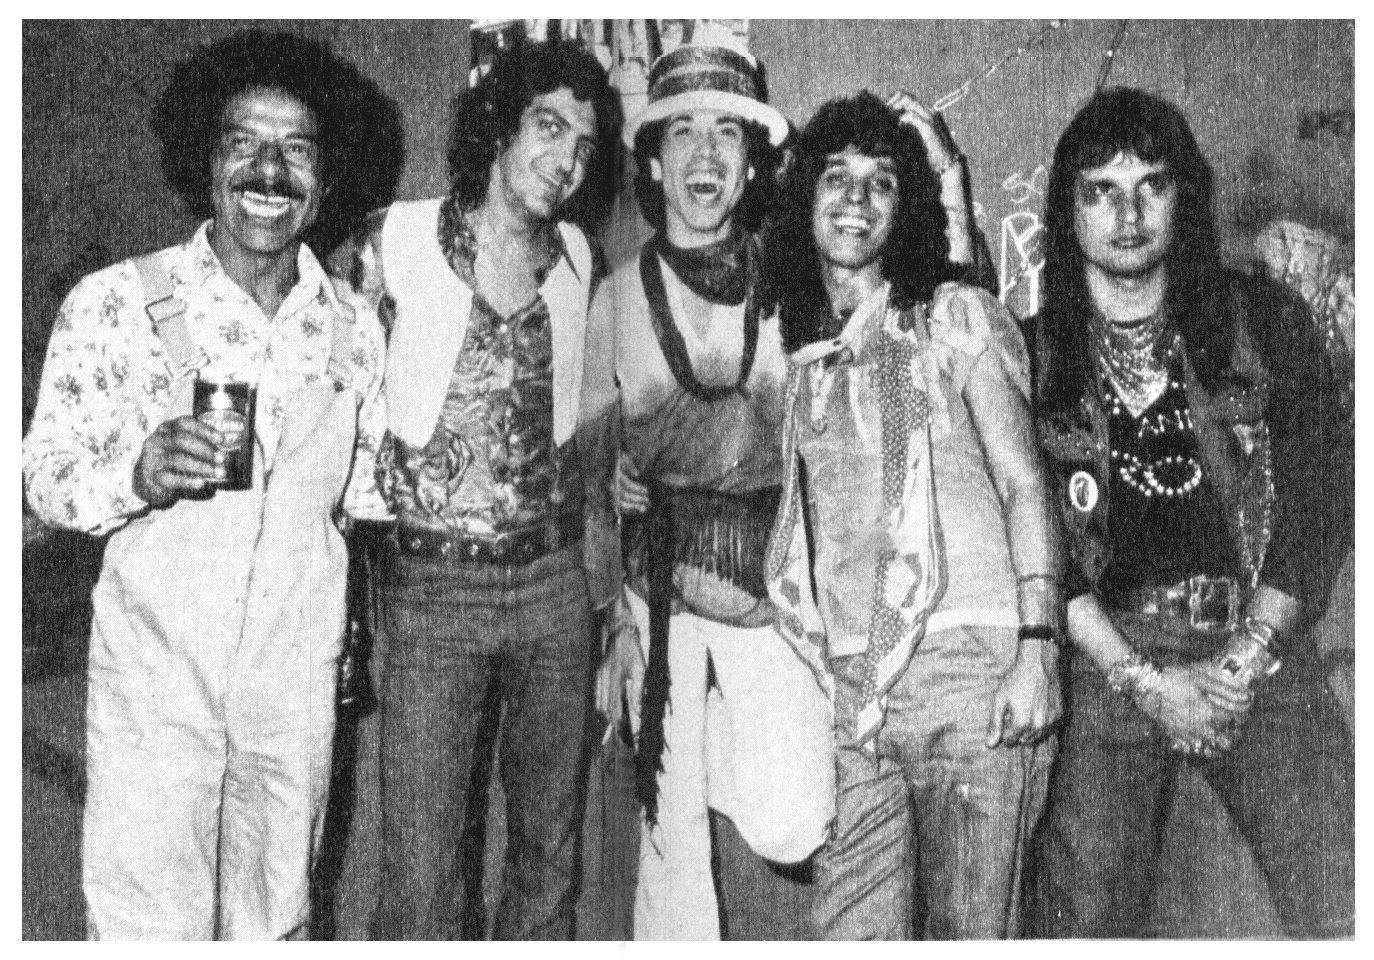 [Charles,+Paulinho+Boca+de+Cantor,+Simbas,+Percy+e+Oswaldo+-+festa+da+Ellus+Punk+out.+1977.jpg]